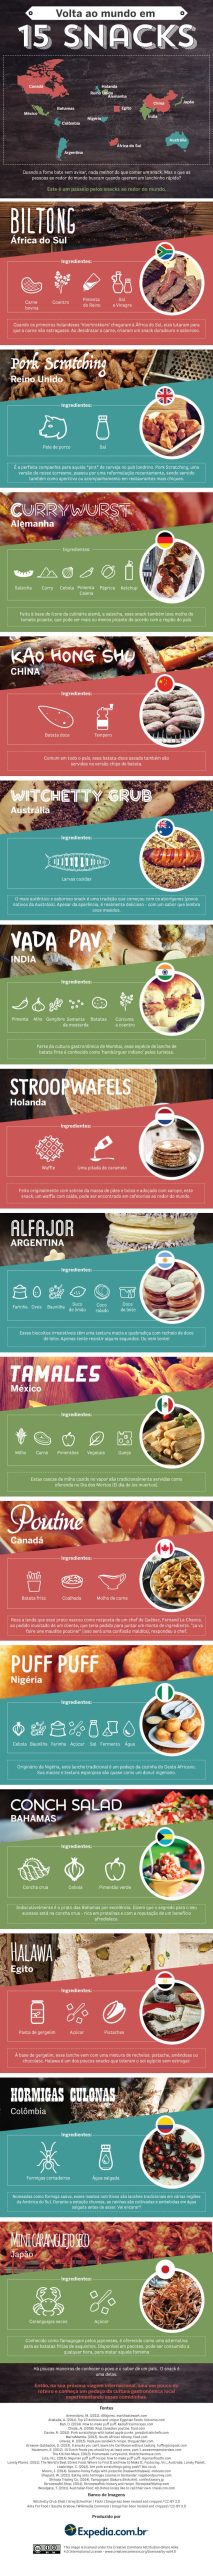 Around-the-world-in-15-snacks (Portuguese)